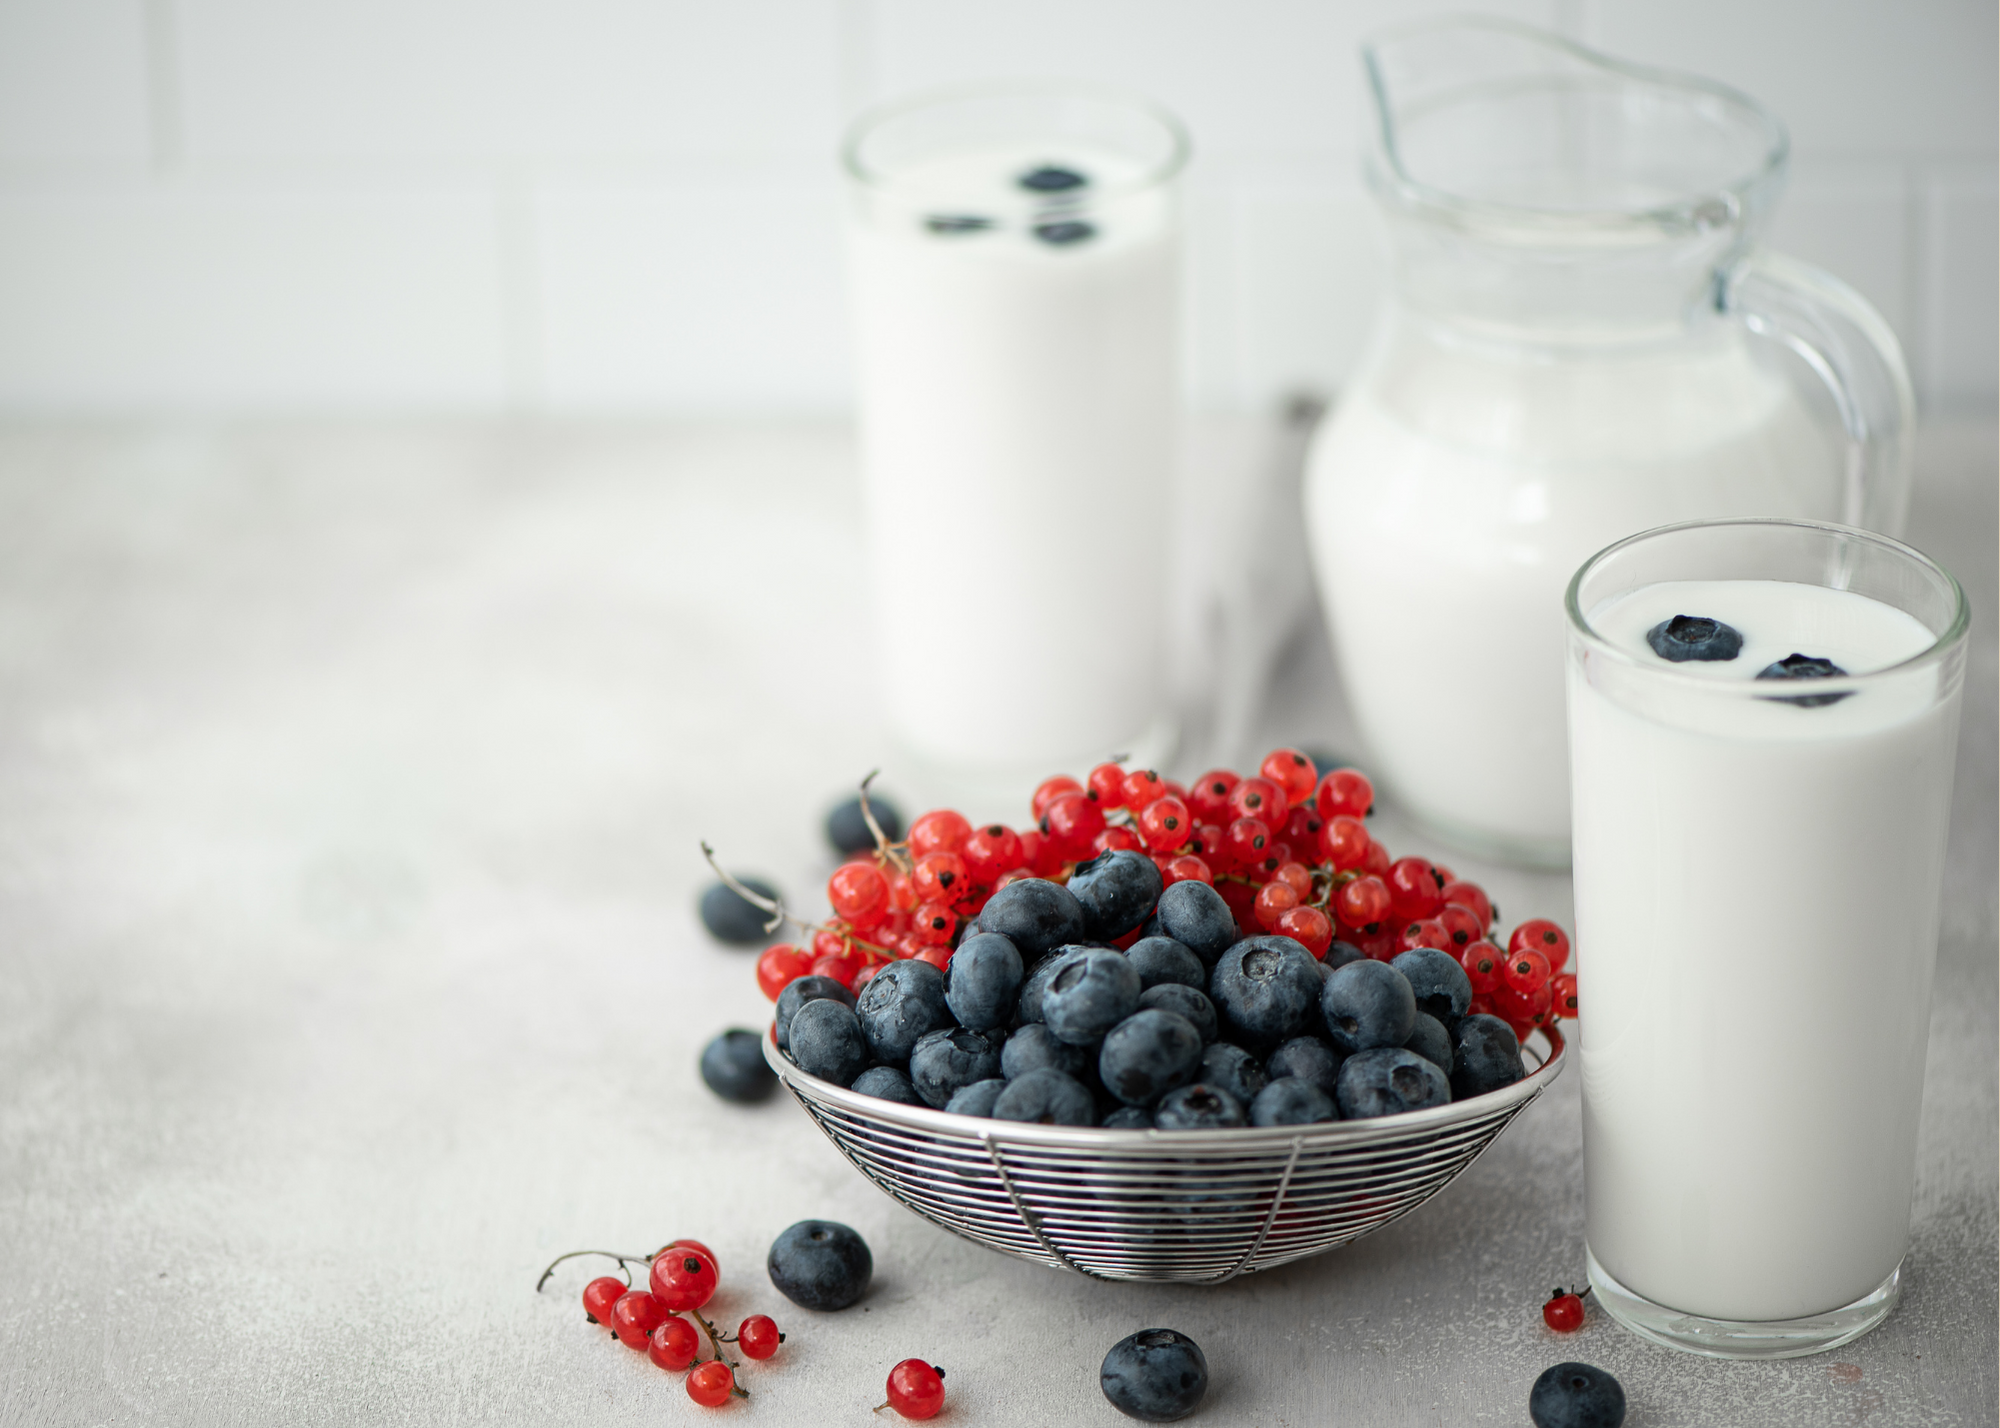 How to Make Homemade Blueberry Kefir Recipe